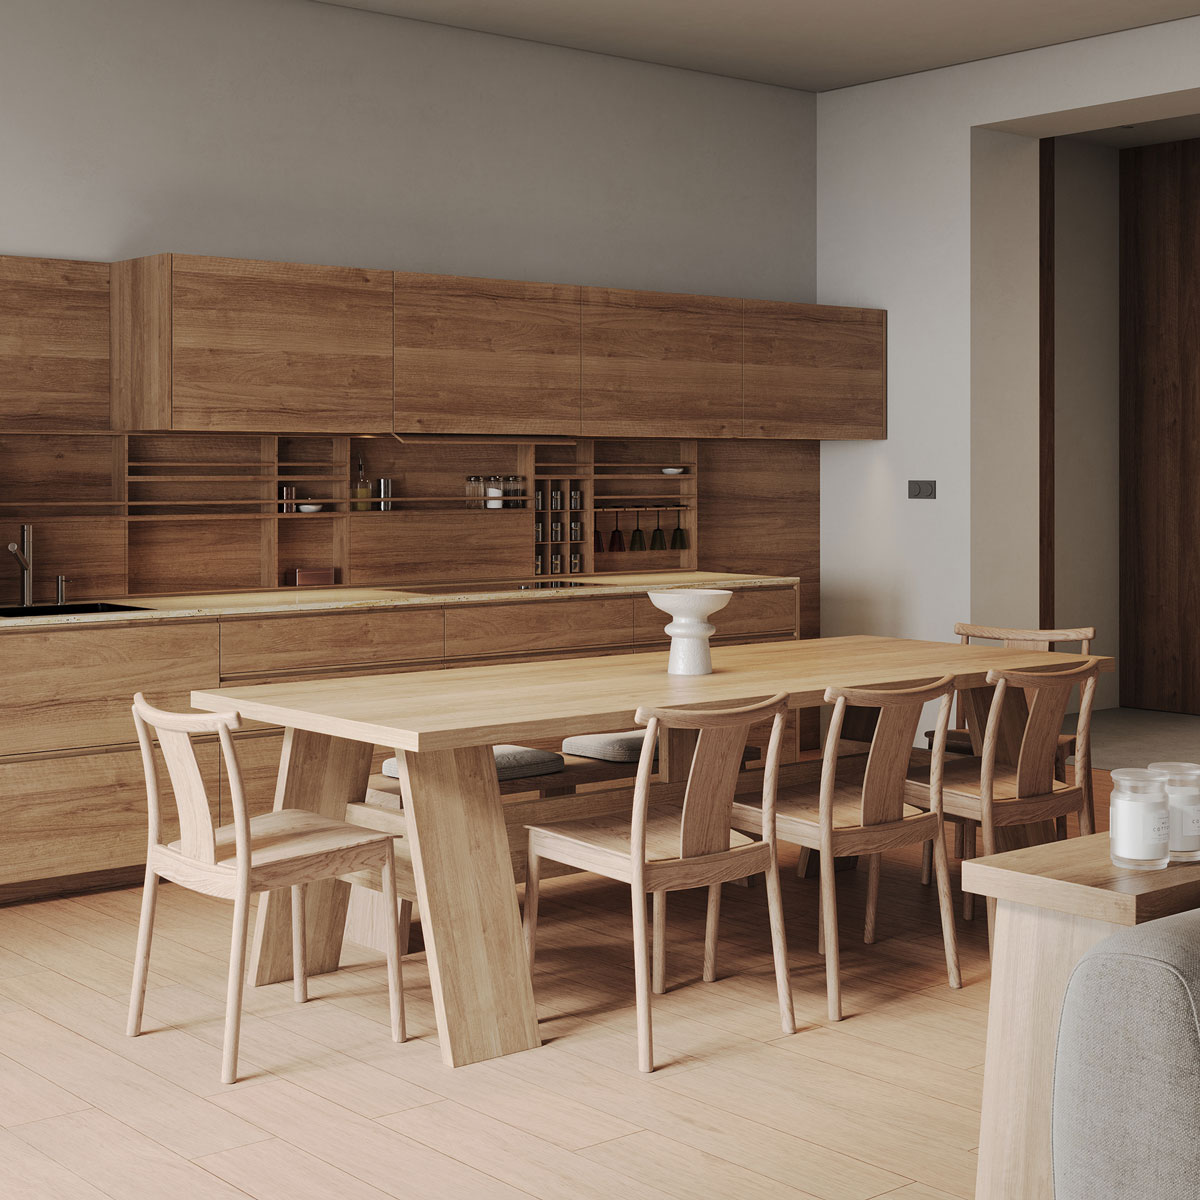 Nội thất phòng bếp chung cư làm từ gỗ tự nhiên